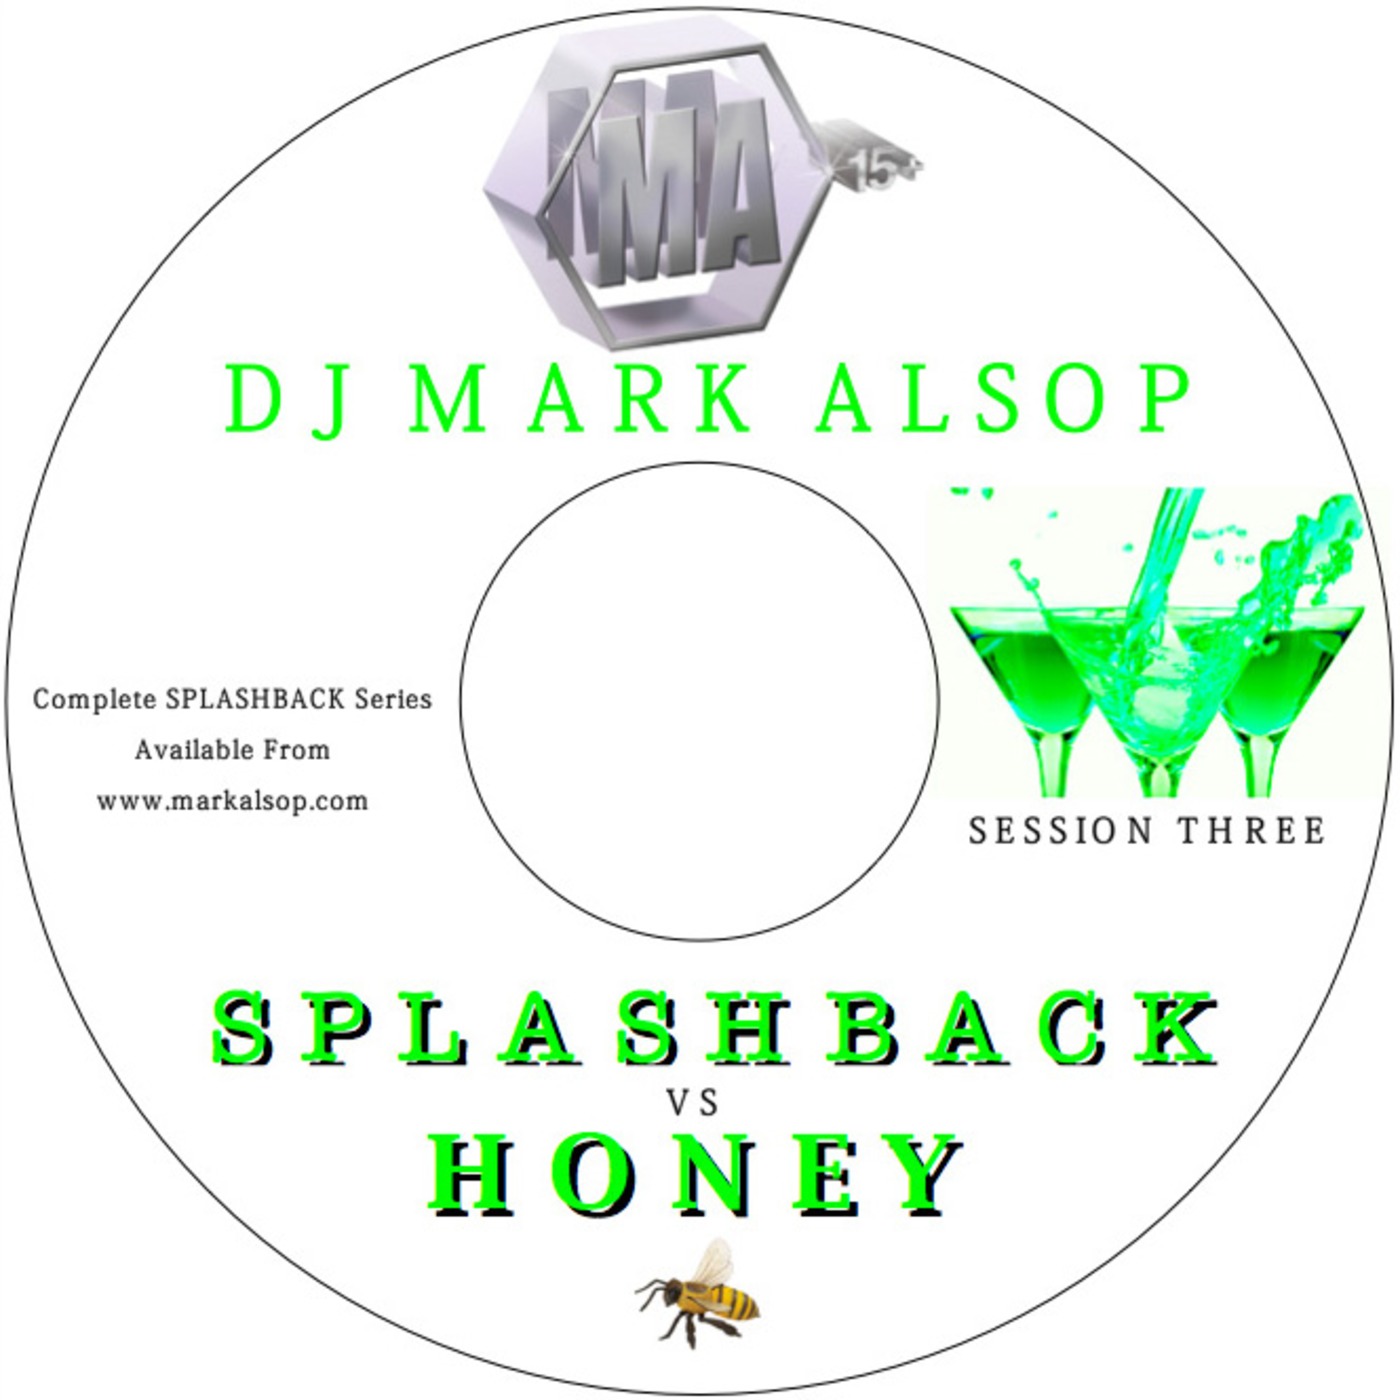 SPLASHBACK - Session Three (Splashback vs Honey)